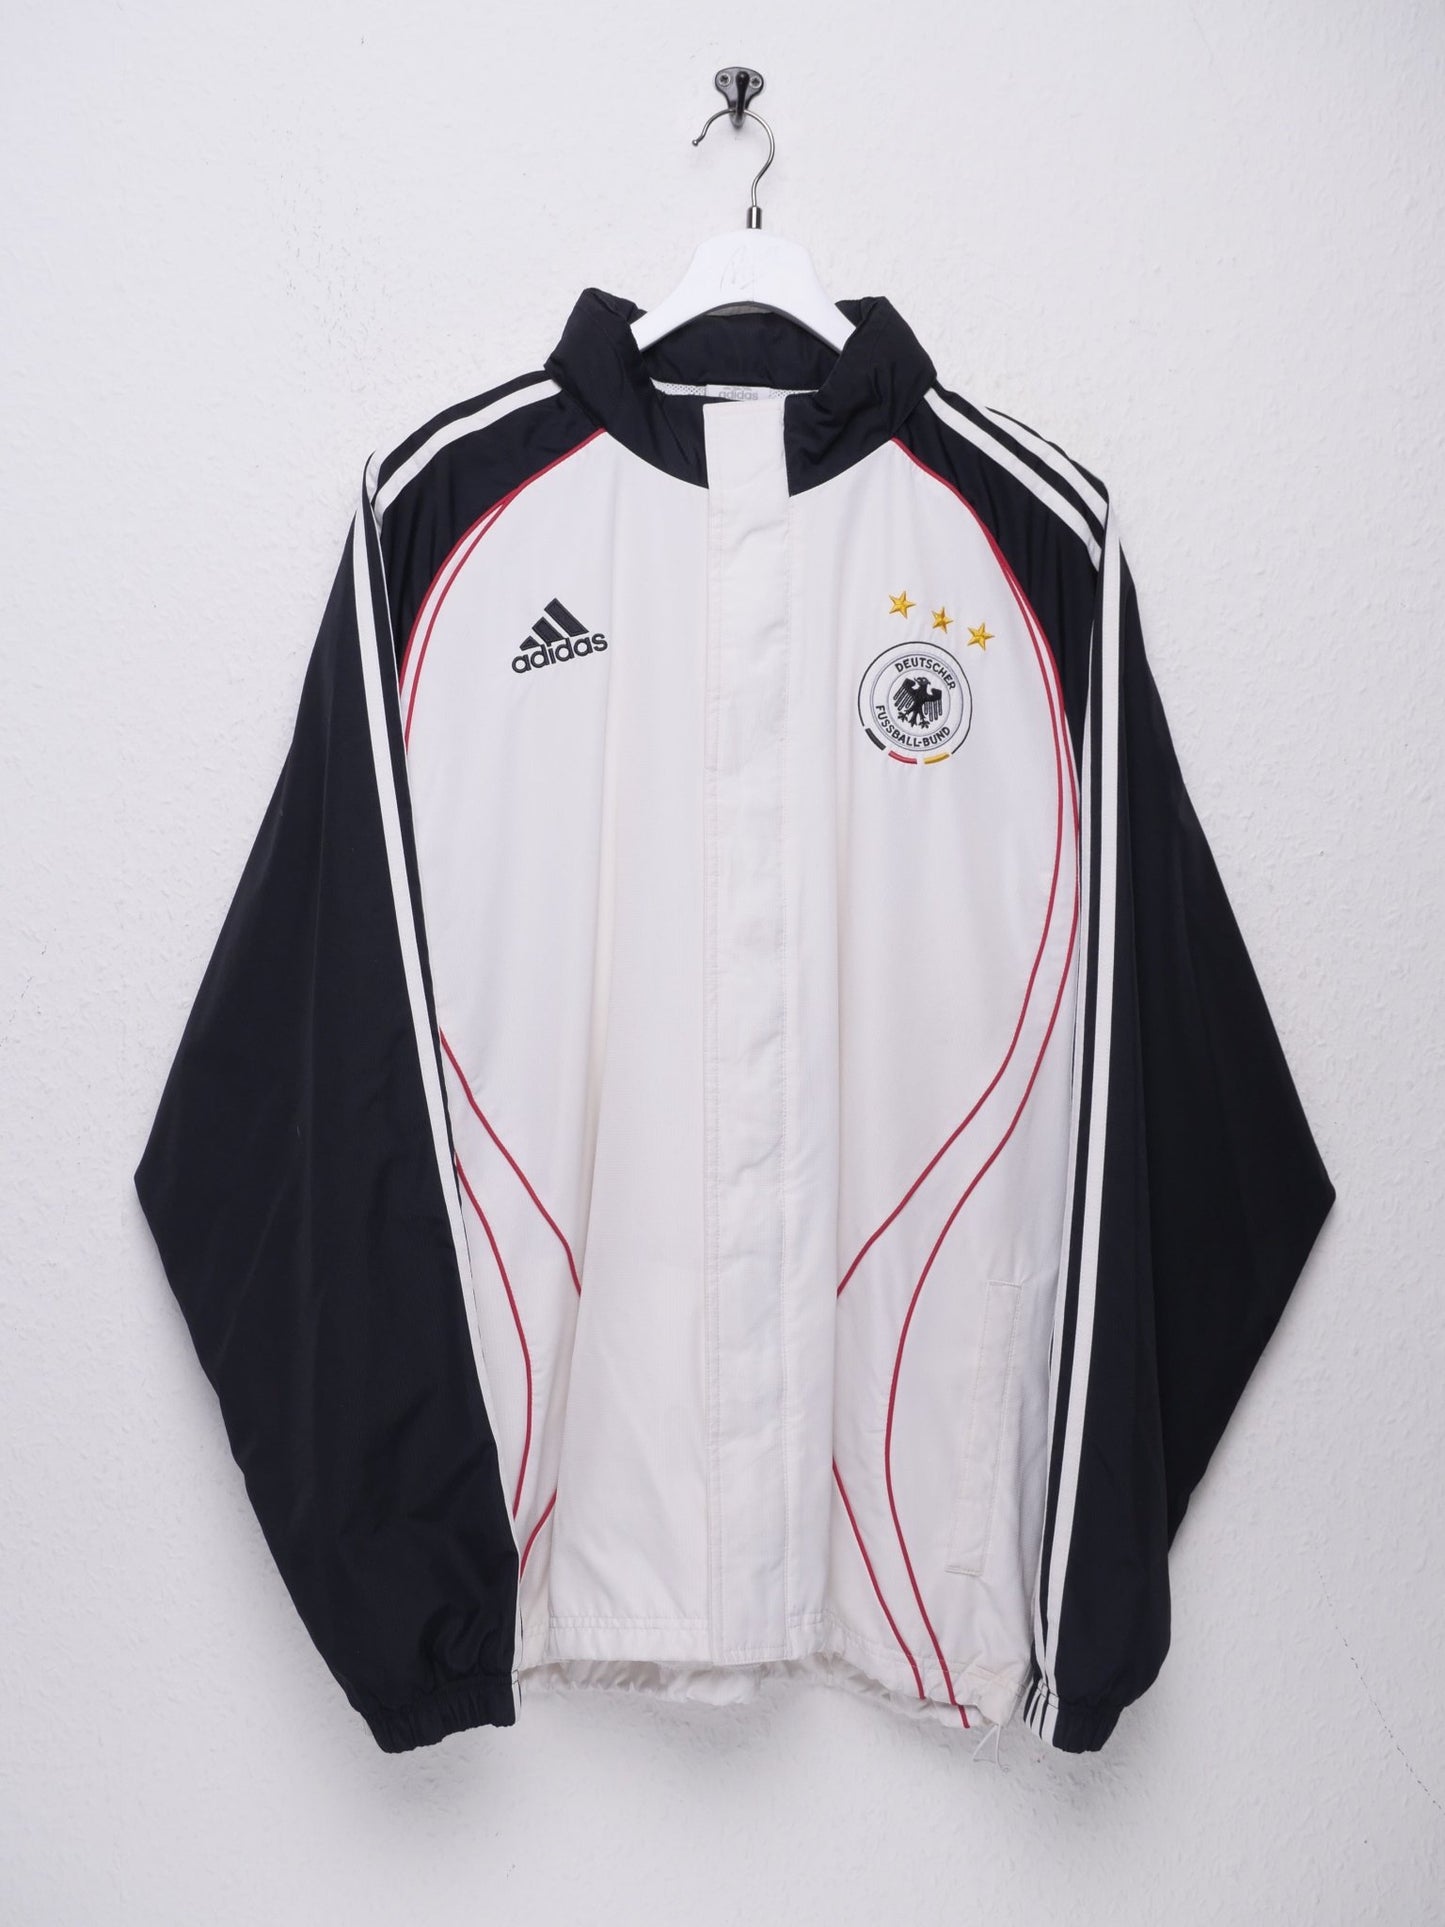 Adidas embroidered Logo 'Deutscher Fussball Bund' Soccer white Track Jacket - Peeces